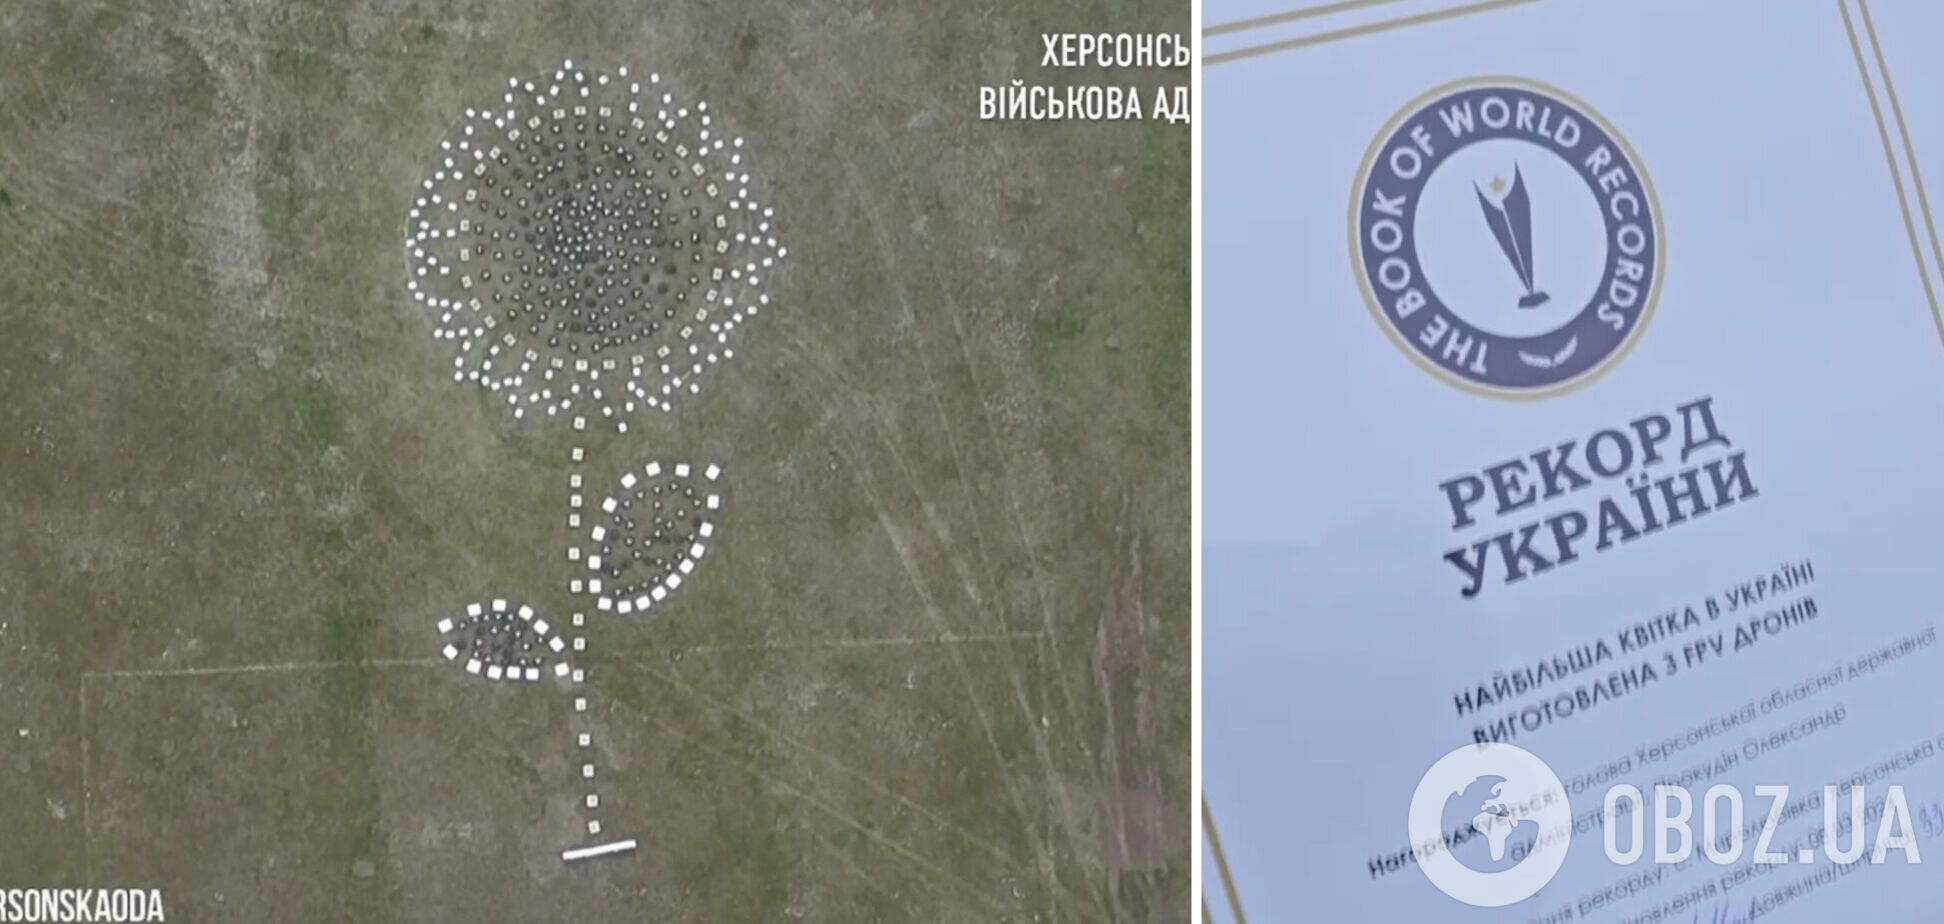 Особлива квітка: херсонський 'соняшник з дронів' увійшов до Книги рекордів України. Відео
